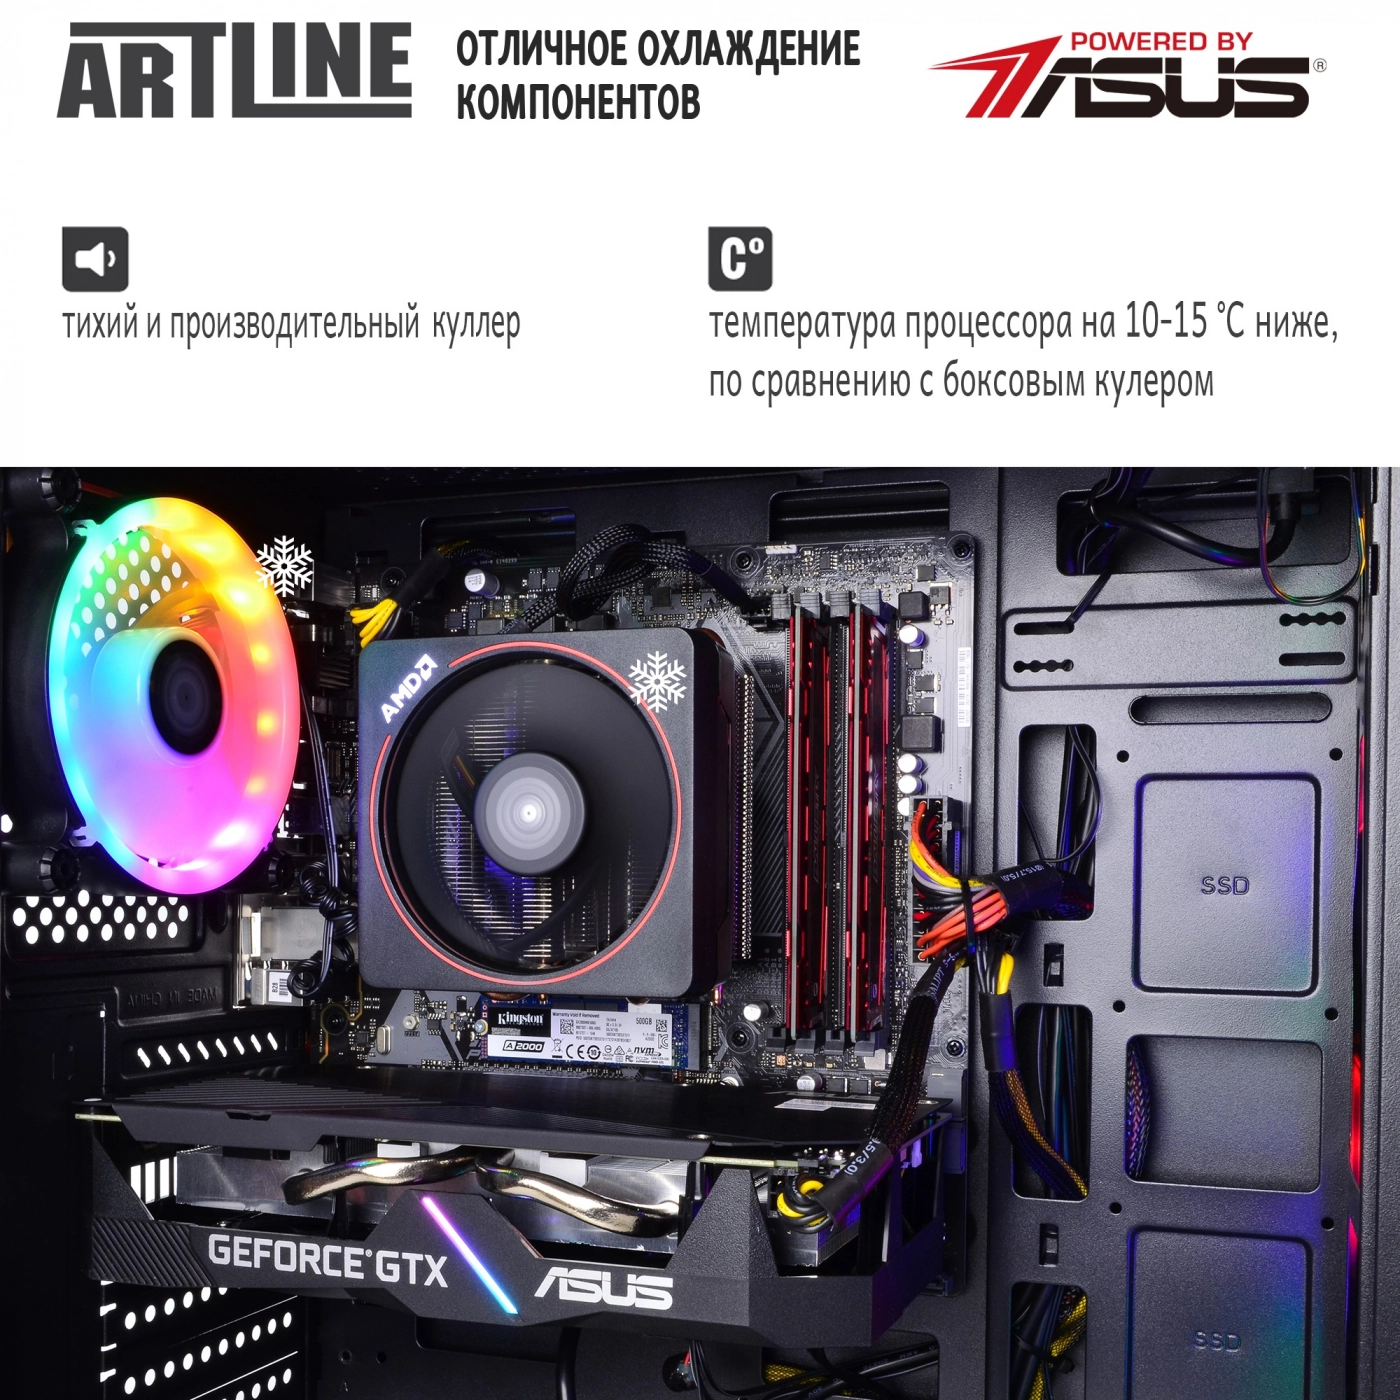 Купить Компьютер ARTLINE Gaming X43v09 - фото 6